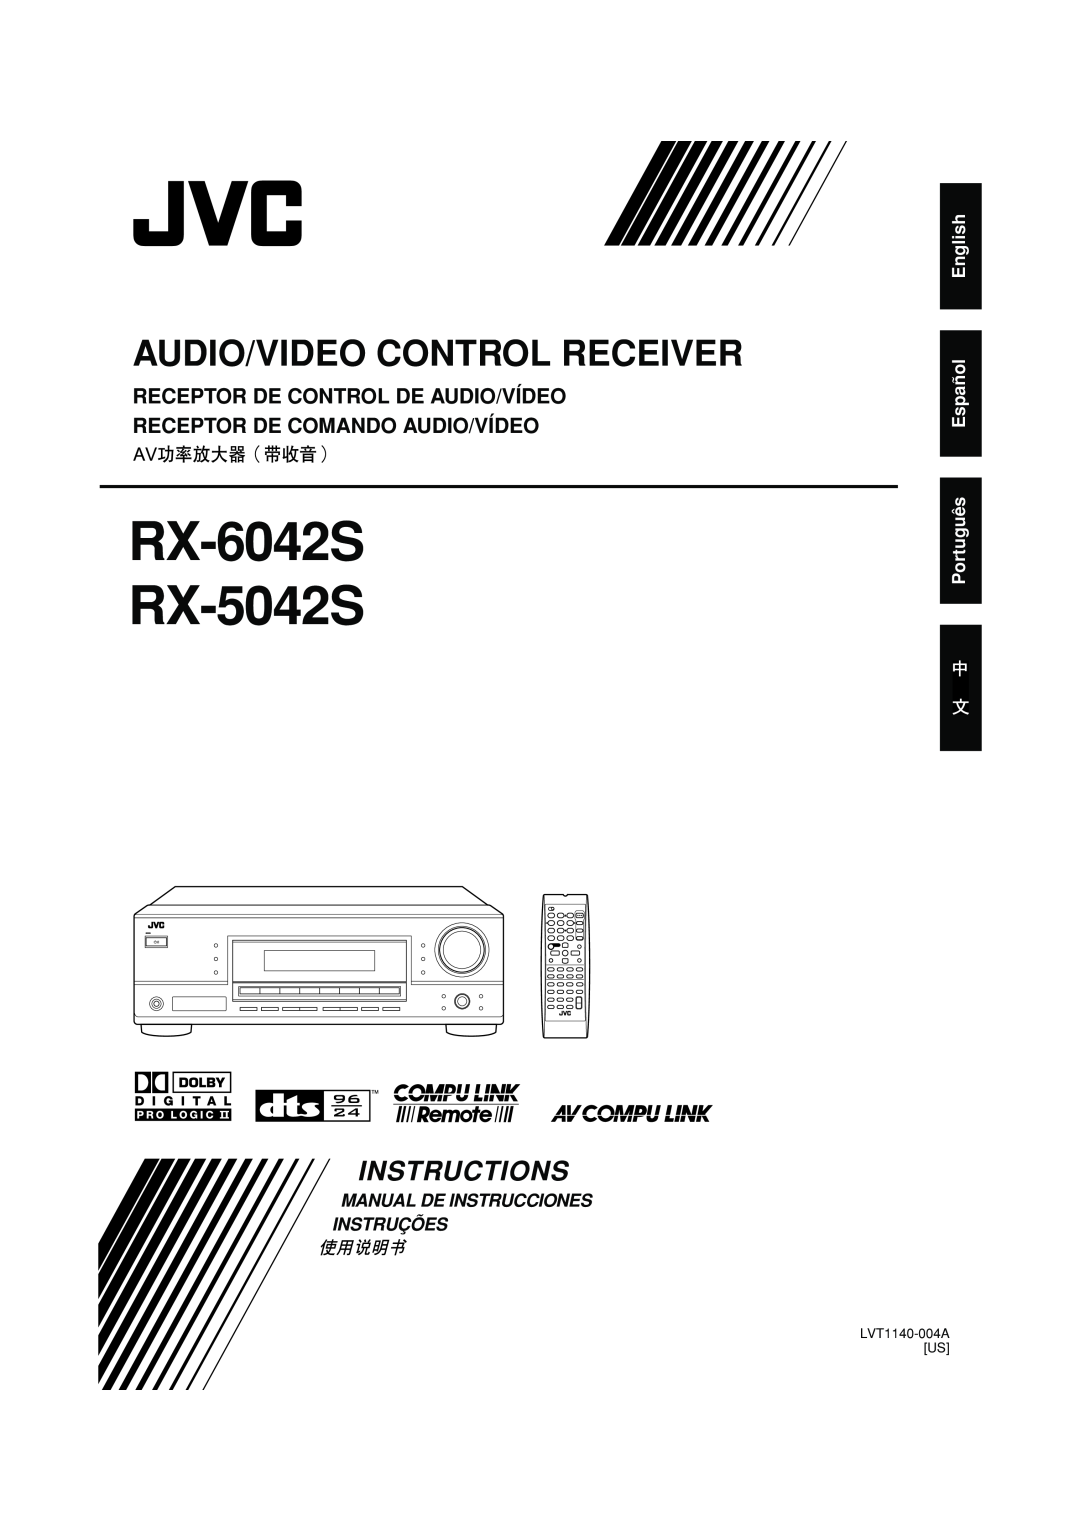 JVC LVT1140-004A manual RX-6042S RX-5042S, Audio/Video Control Receiver, Instructions, Manual De Instrucciones Instruções 